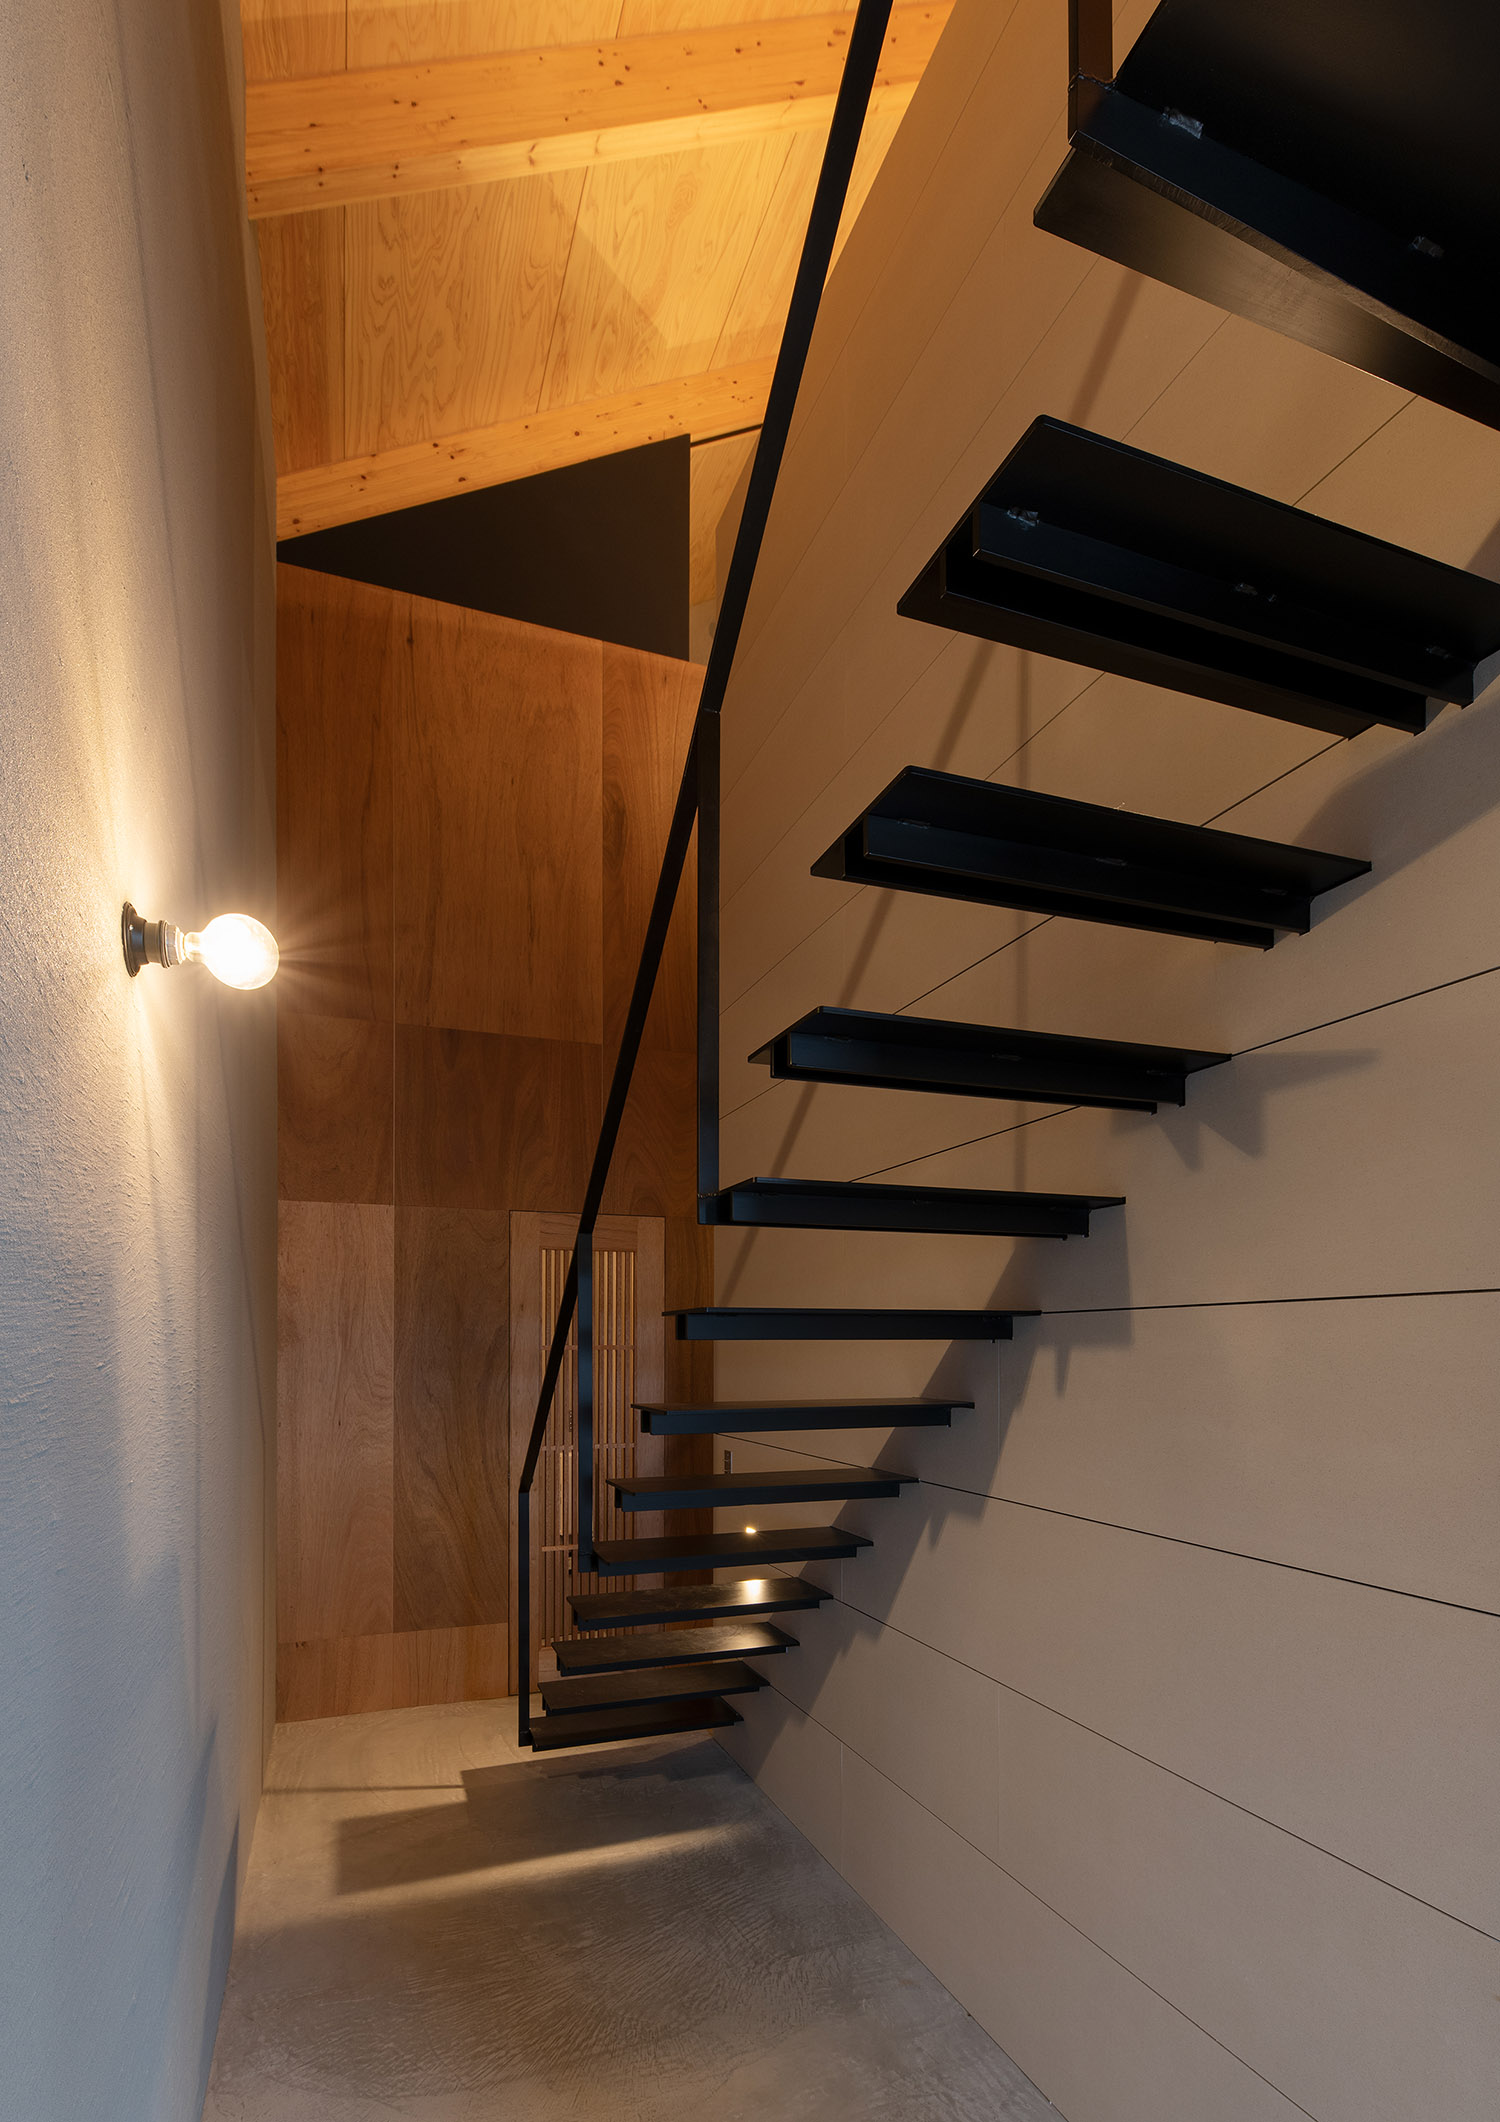 壁に間接照明が取り付けられた土間空間にあるスケルトン階段・デザイン住宅